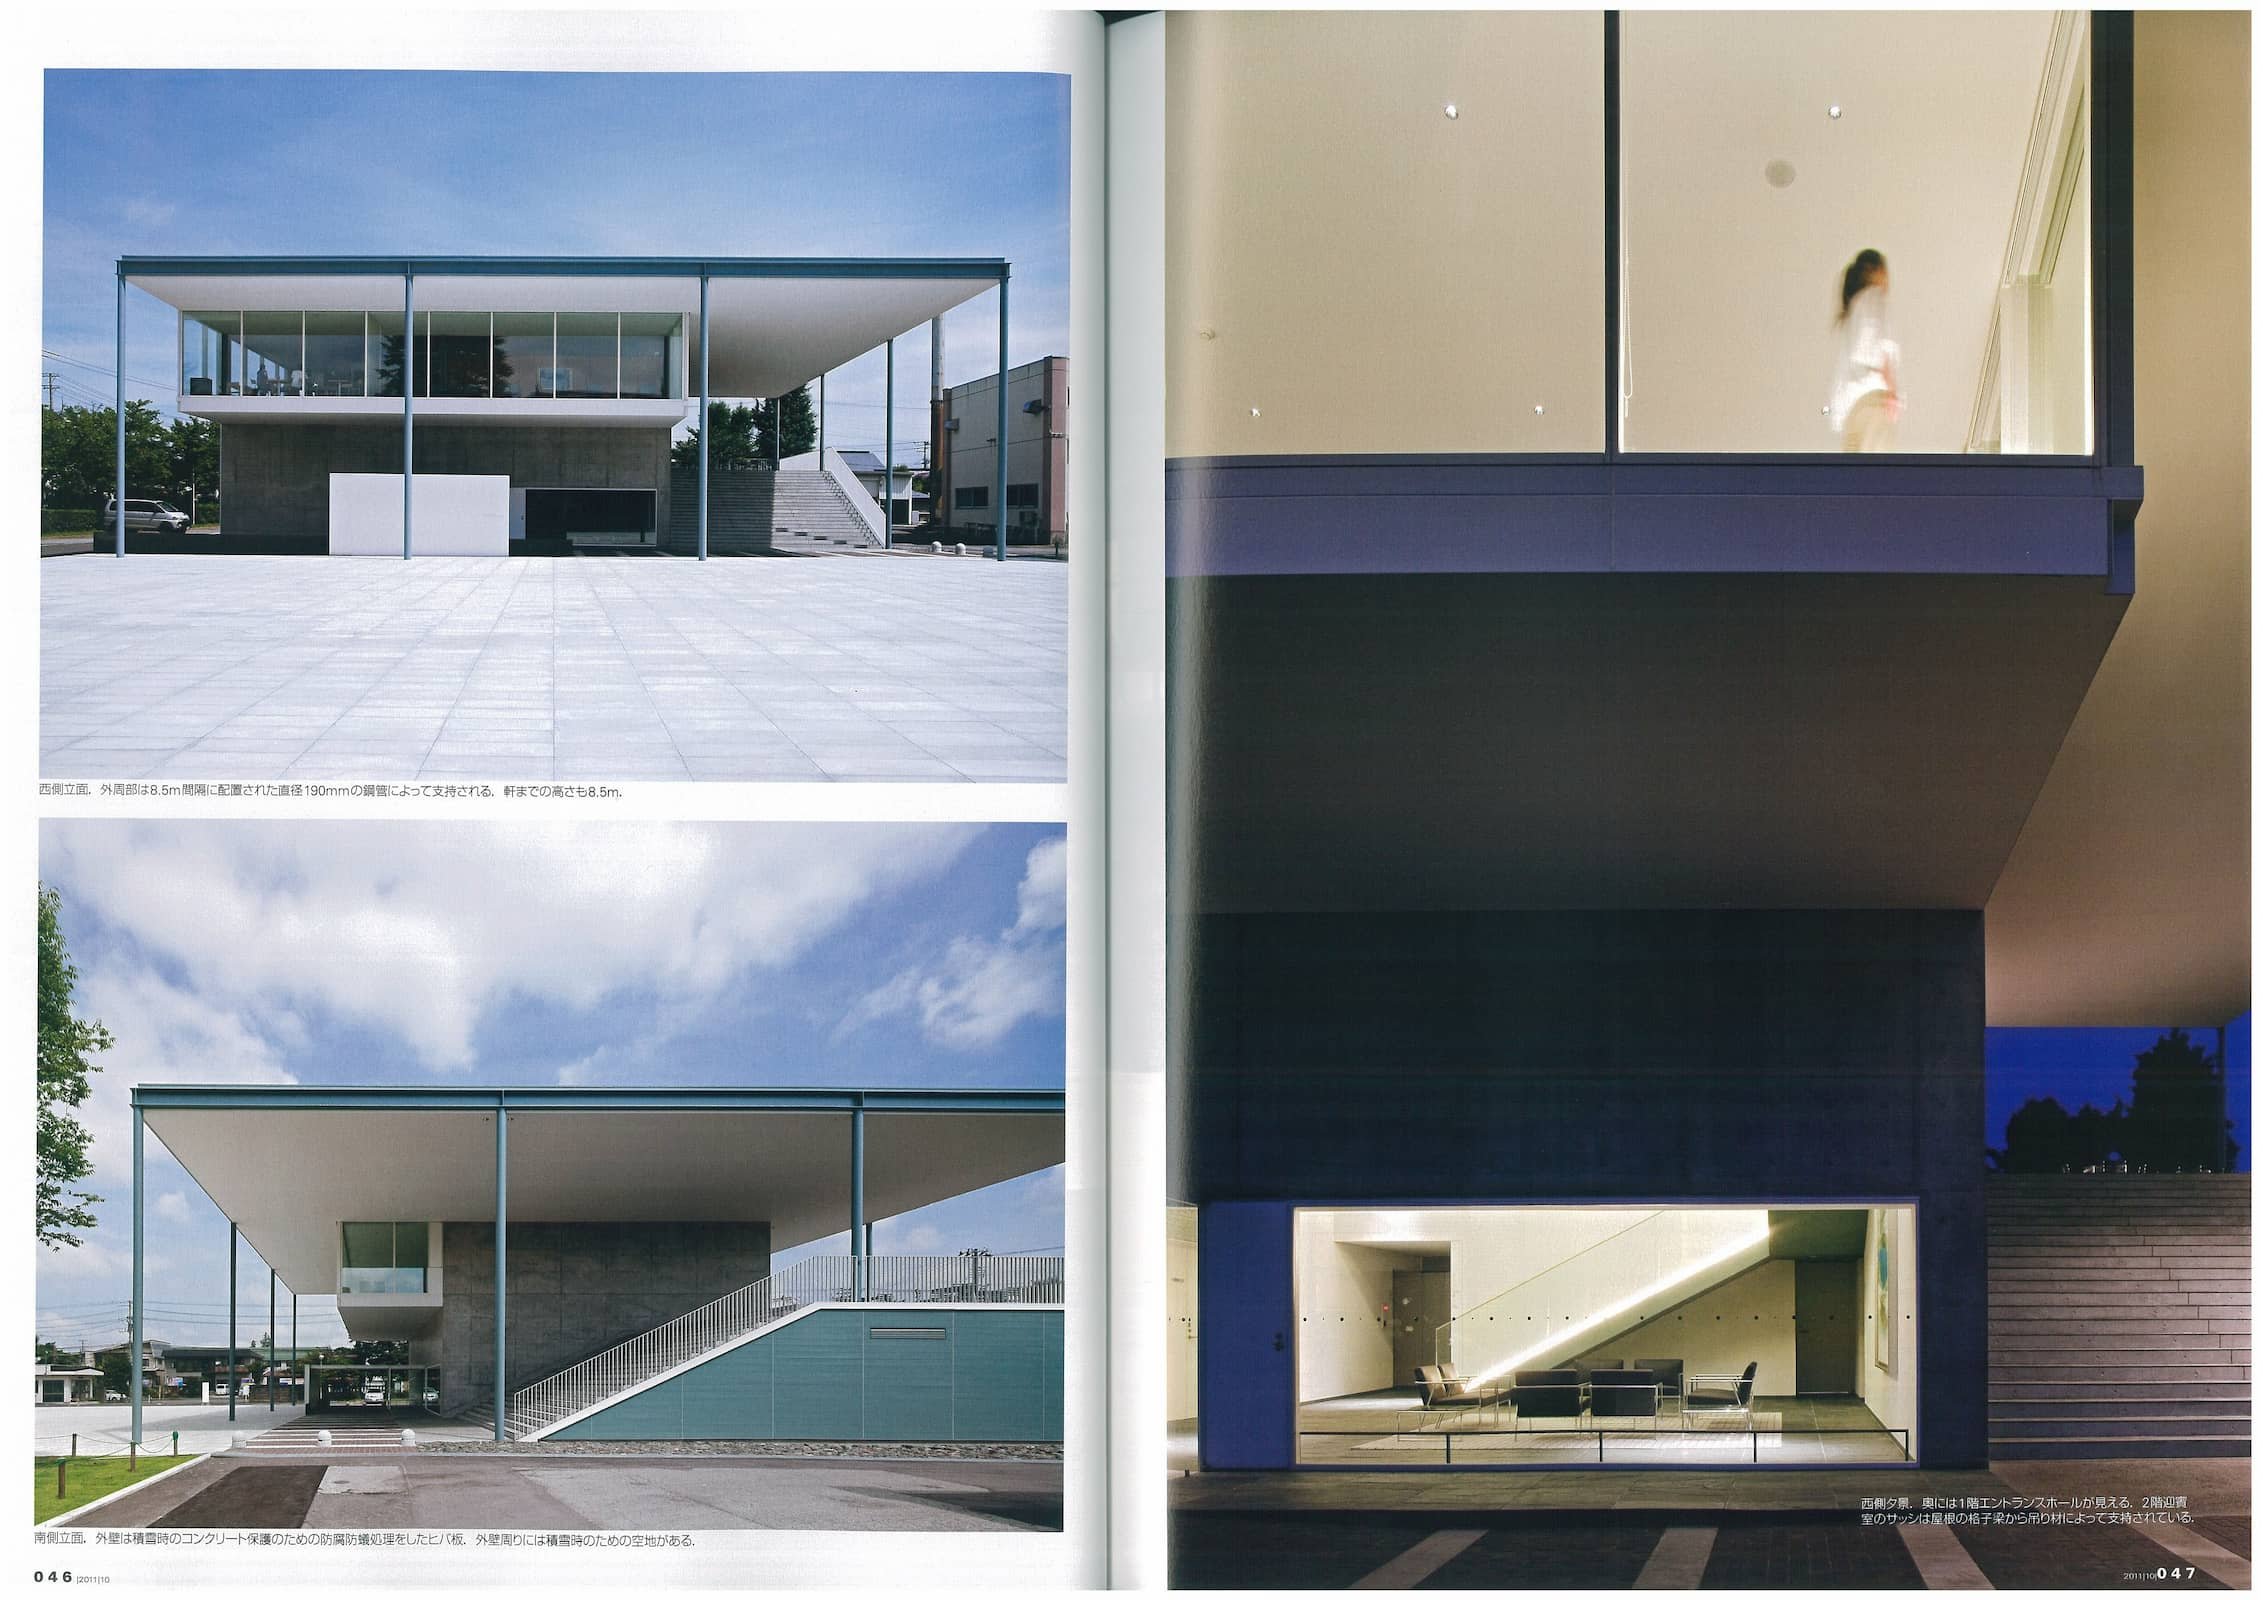 新建築 - New Architecture - October 2011_Page_4.jpg